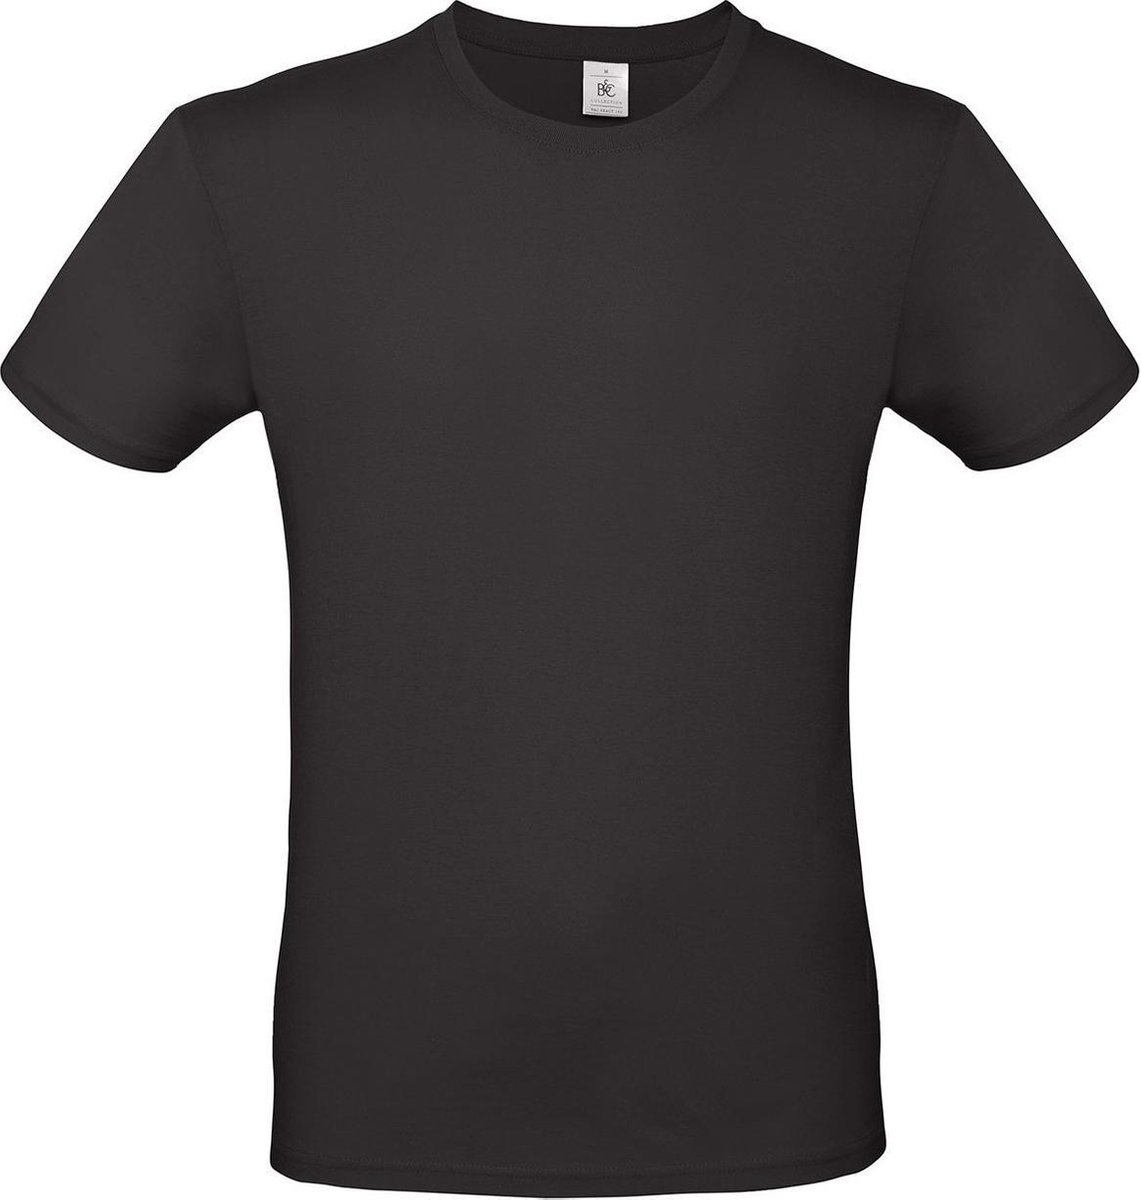 Set van 2x stuks zwart basic t-shirt met ronde hals voor heren - katoen - 145 grams - zwarte shirts / kleding, maat: L (52)